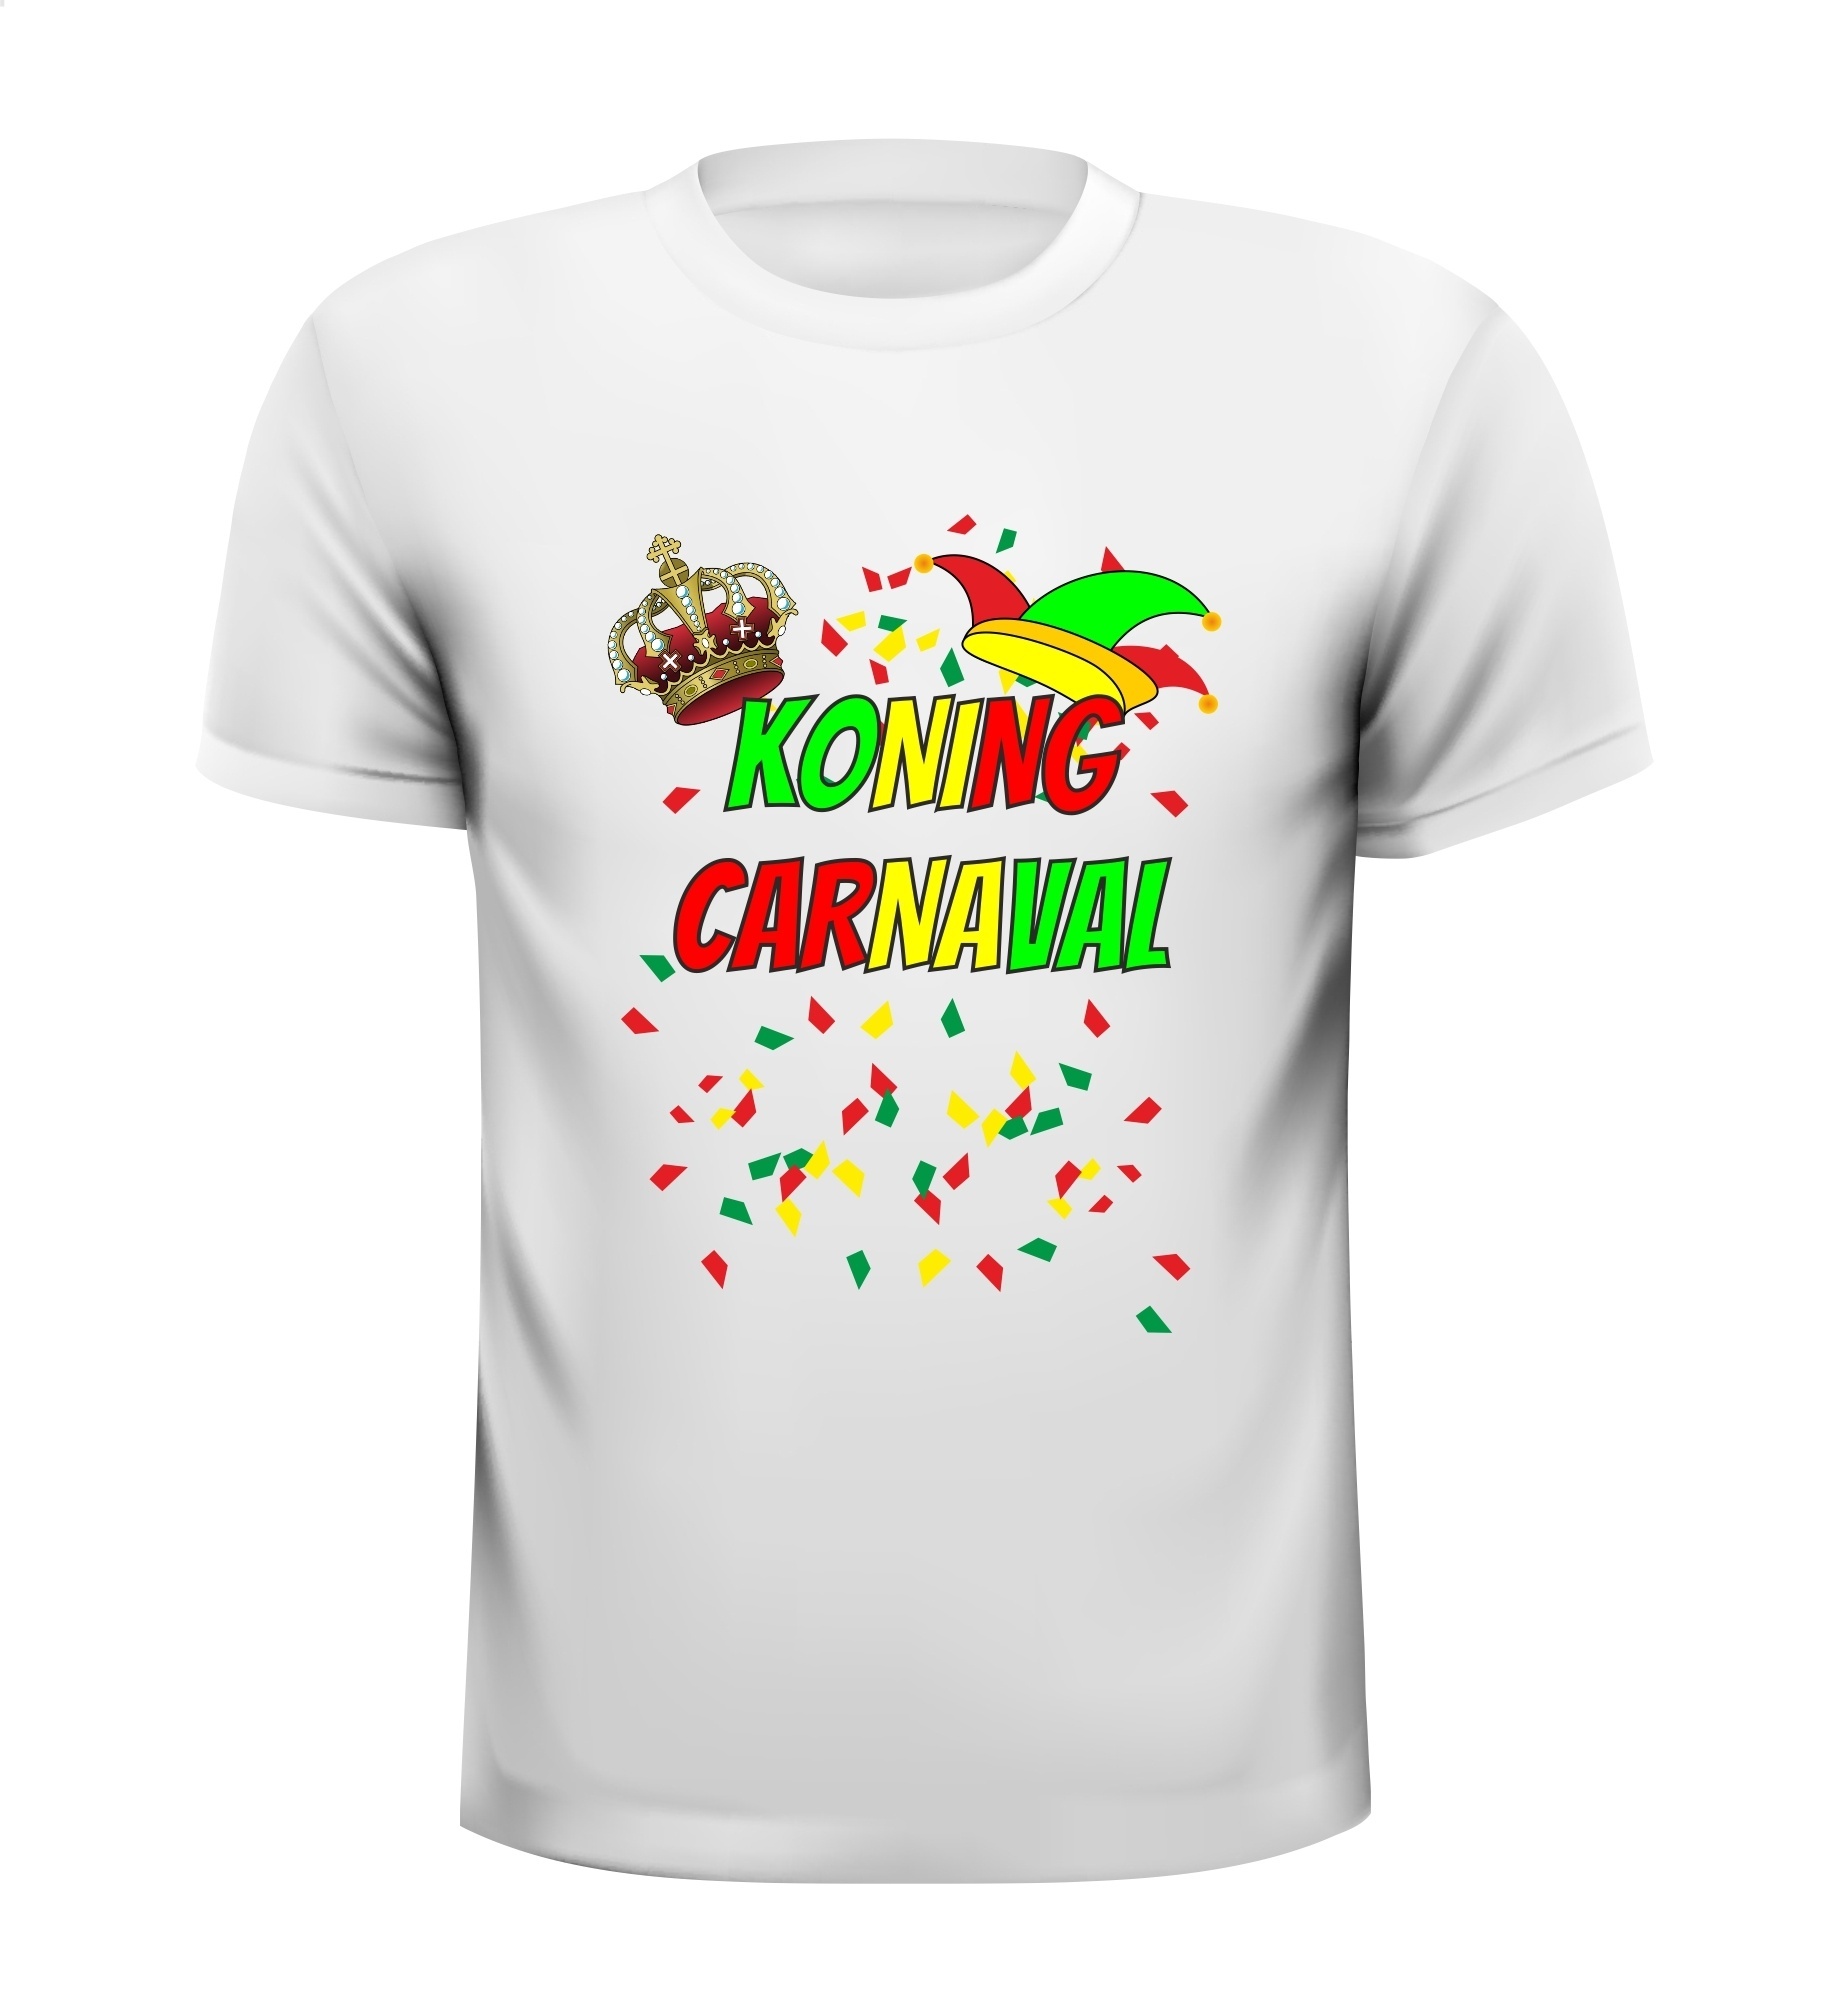 Koning carnaval T-shirt